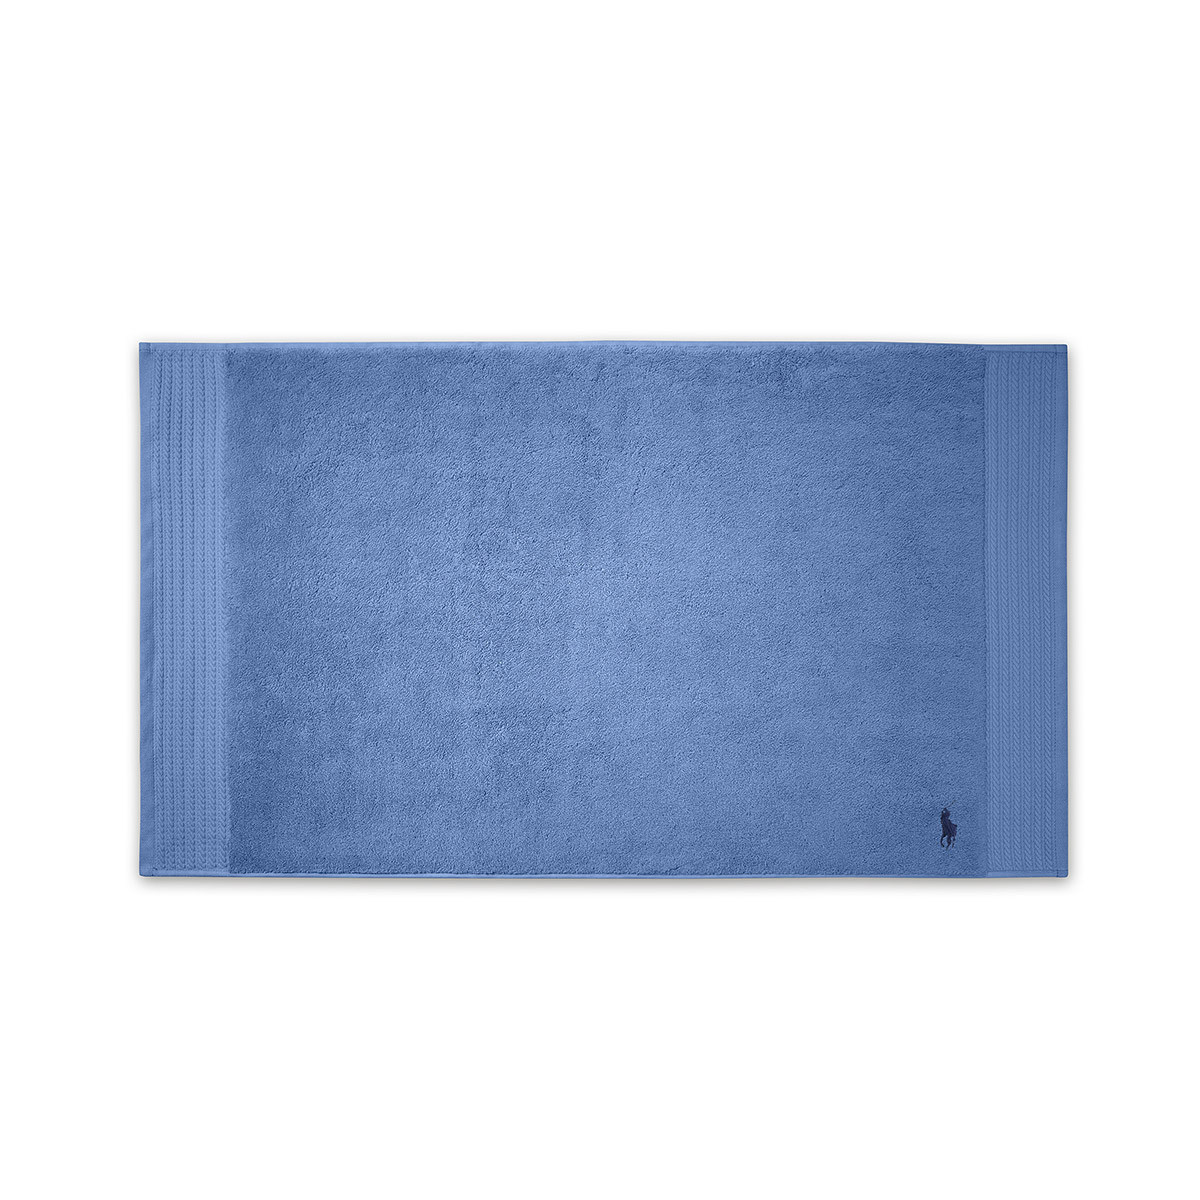 ковер для ванной Ralph Lauren Polo Player - купить в магазине Yves Delorme Russia